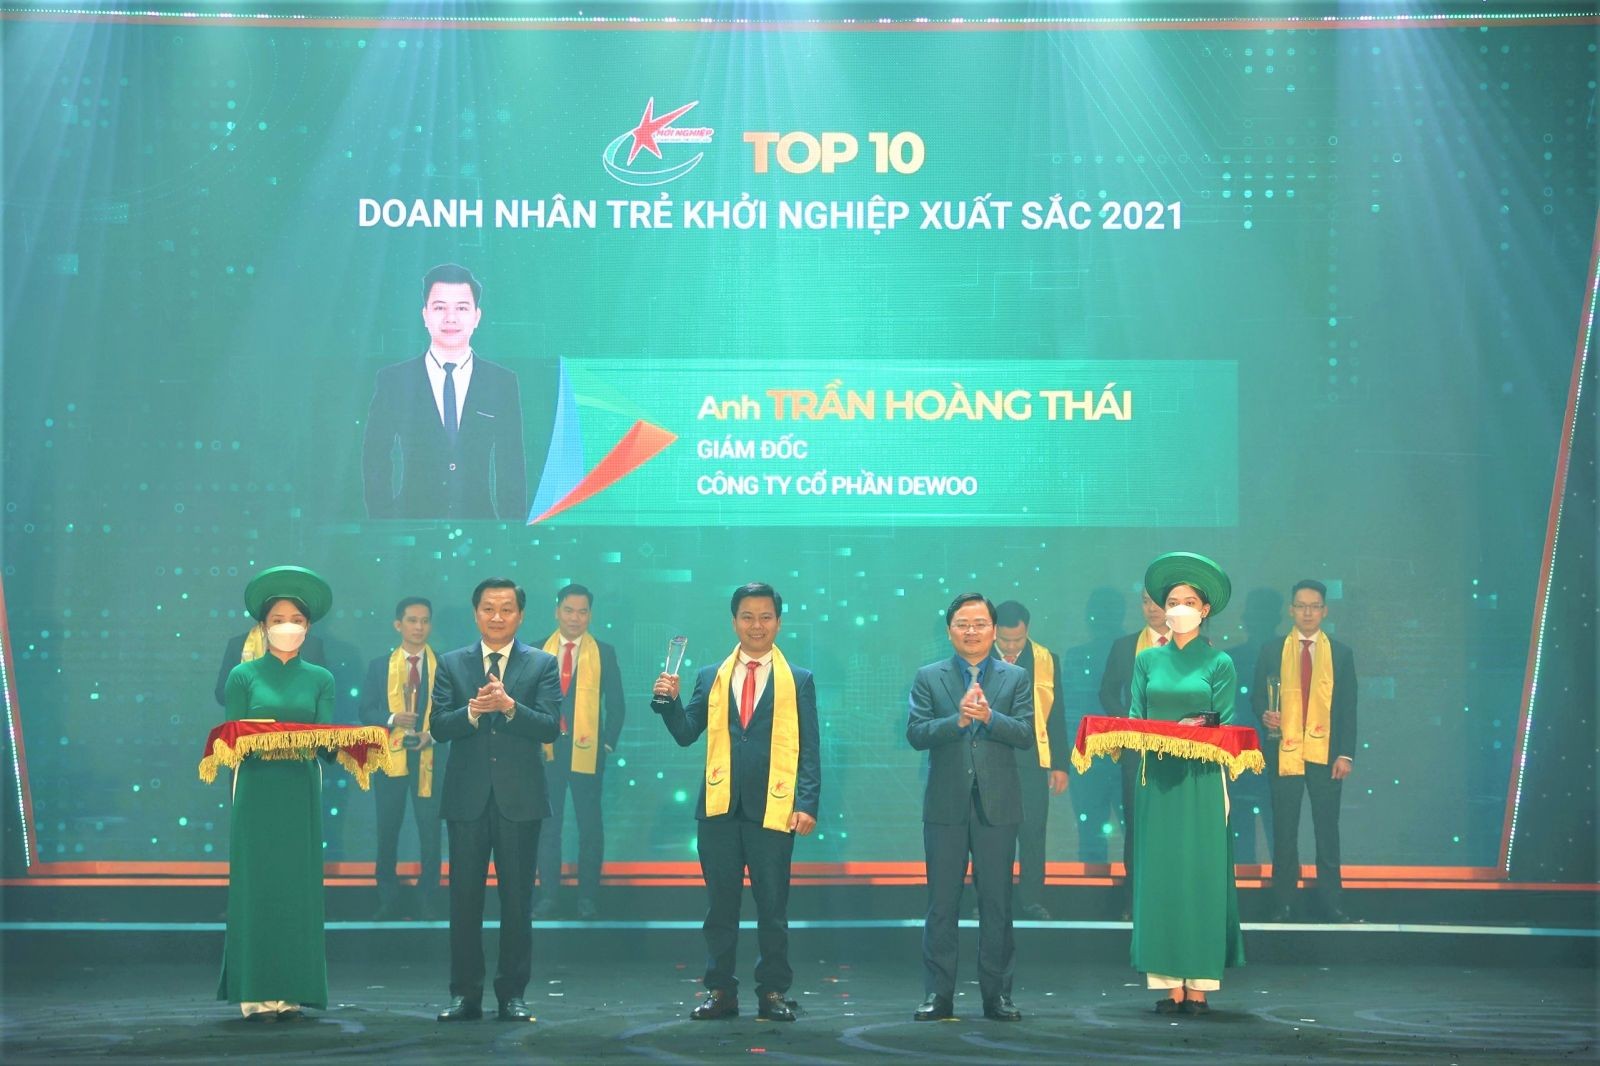 
Cuối tháng 12/2021, Trần Hoàng Thái trở thành doanh nhân thế hệ 9x duy nhất của khu vực Nam Trung Bộ được xướng tên trong “Top 10 Doanh nhân trẻ khởi nghiệp xuất sắc năm 2021”
